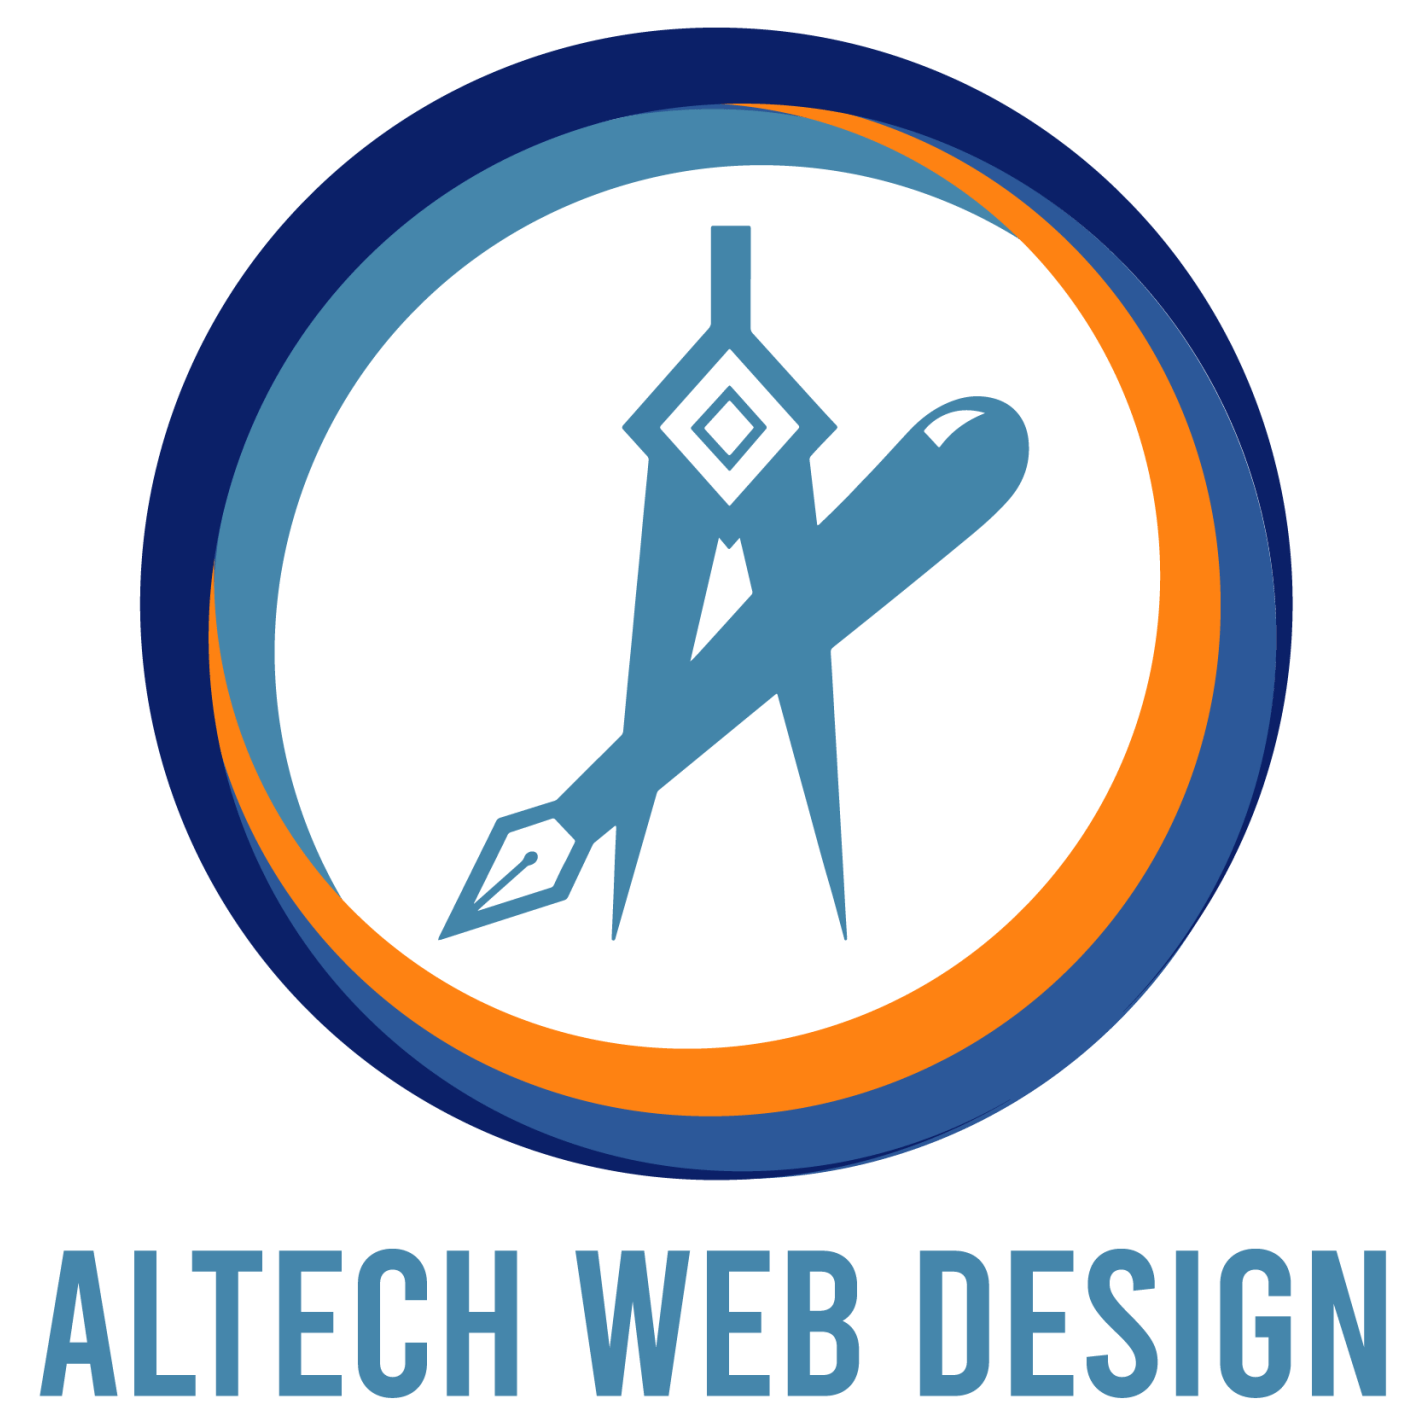 Un logotipo azul y naranja para el diseño web altech.